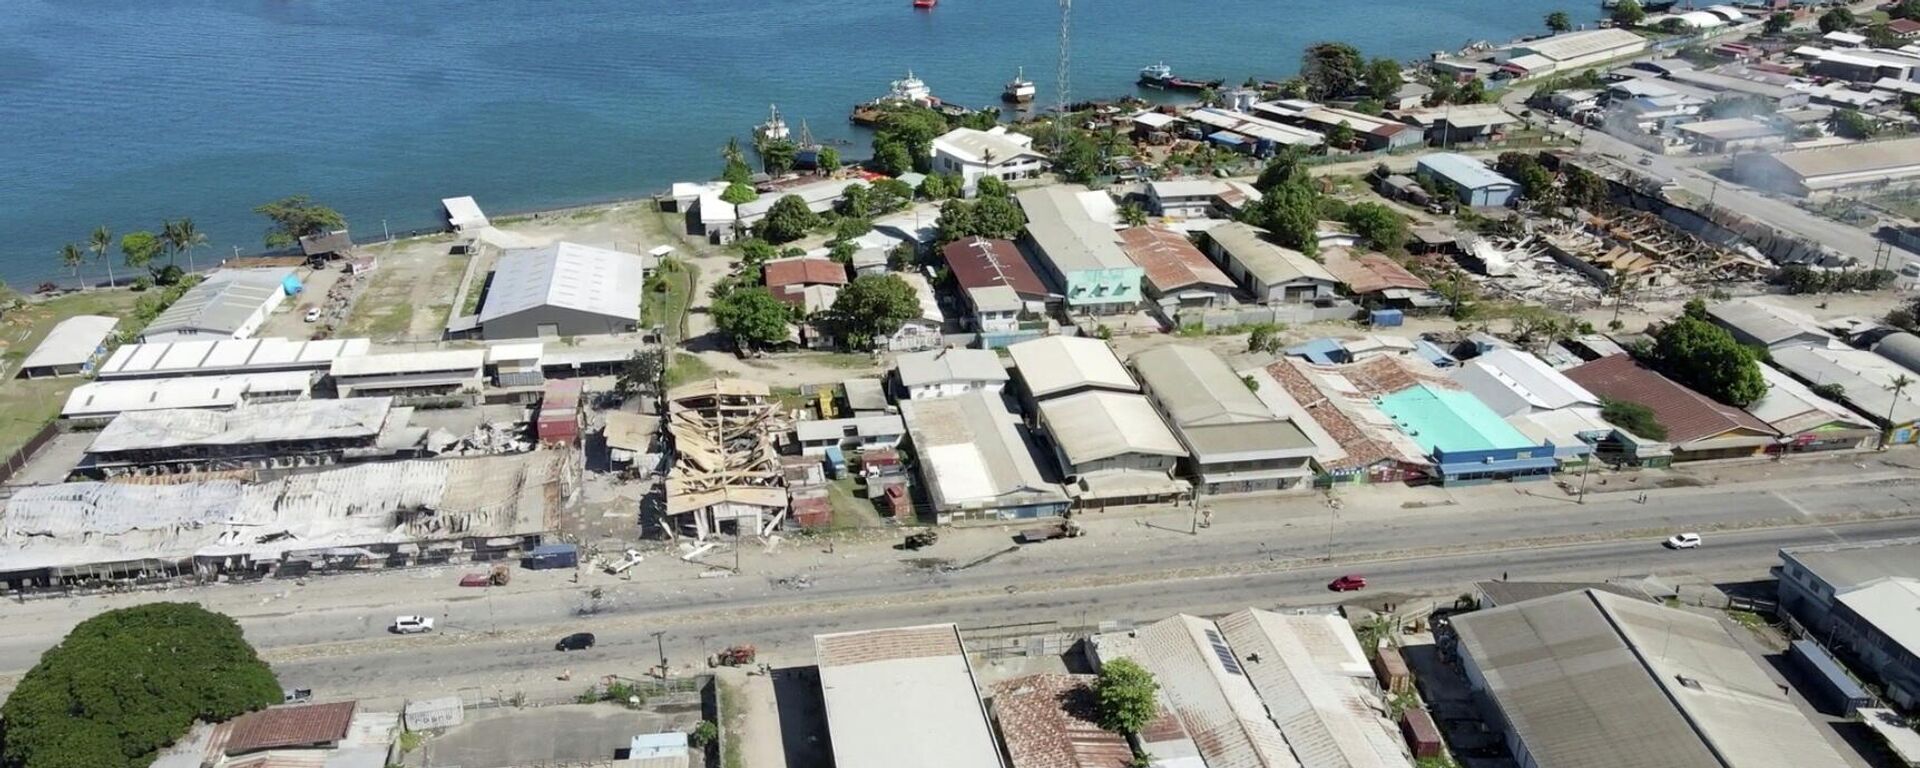 مباني مدمرة بعد أيام من الاضطرابات في هونيارا، جزر سليمان، 27 نوفمبر/ تشرين الثاني 2021 - سبوتنيك عربي, 1920, 20.04.2022